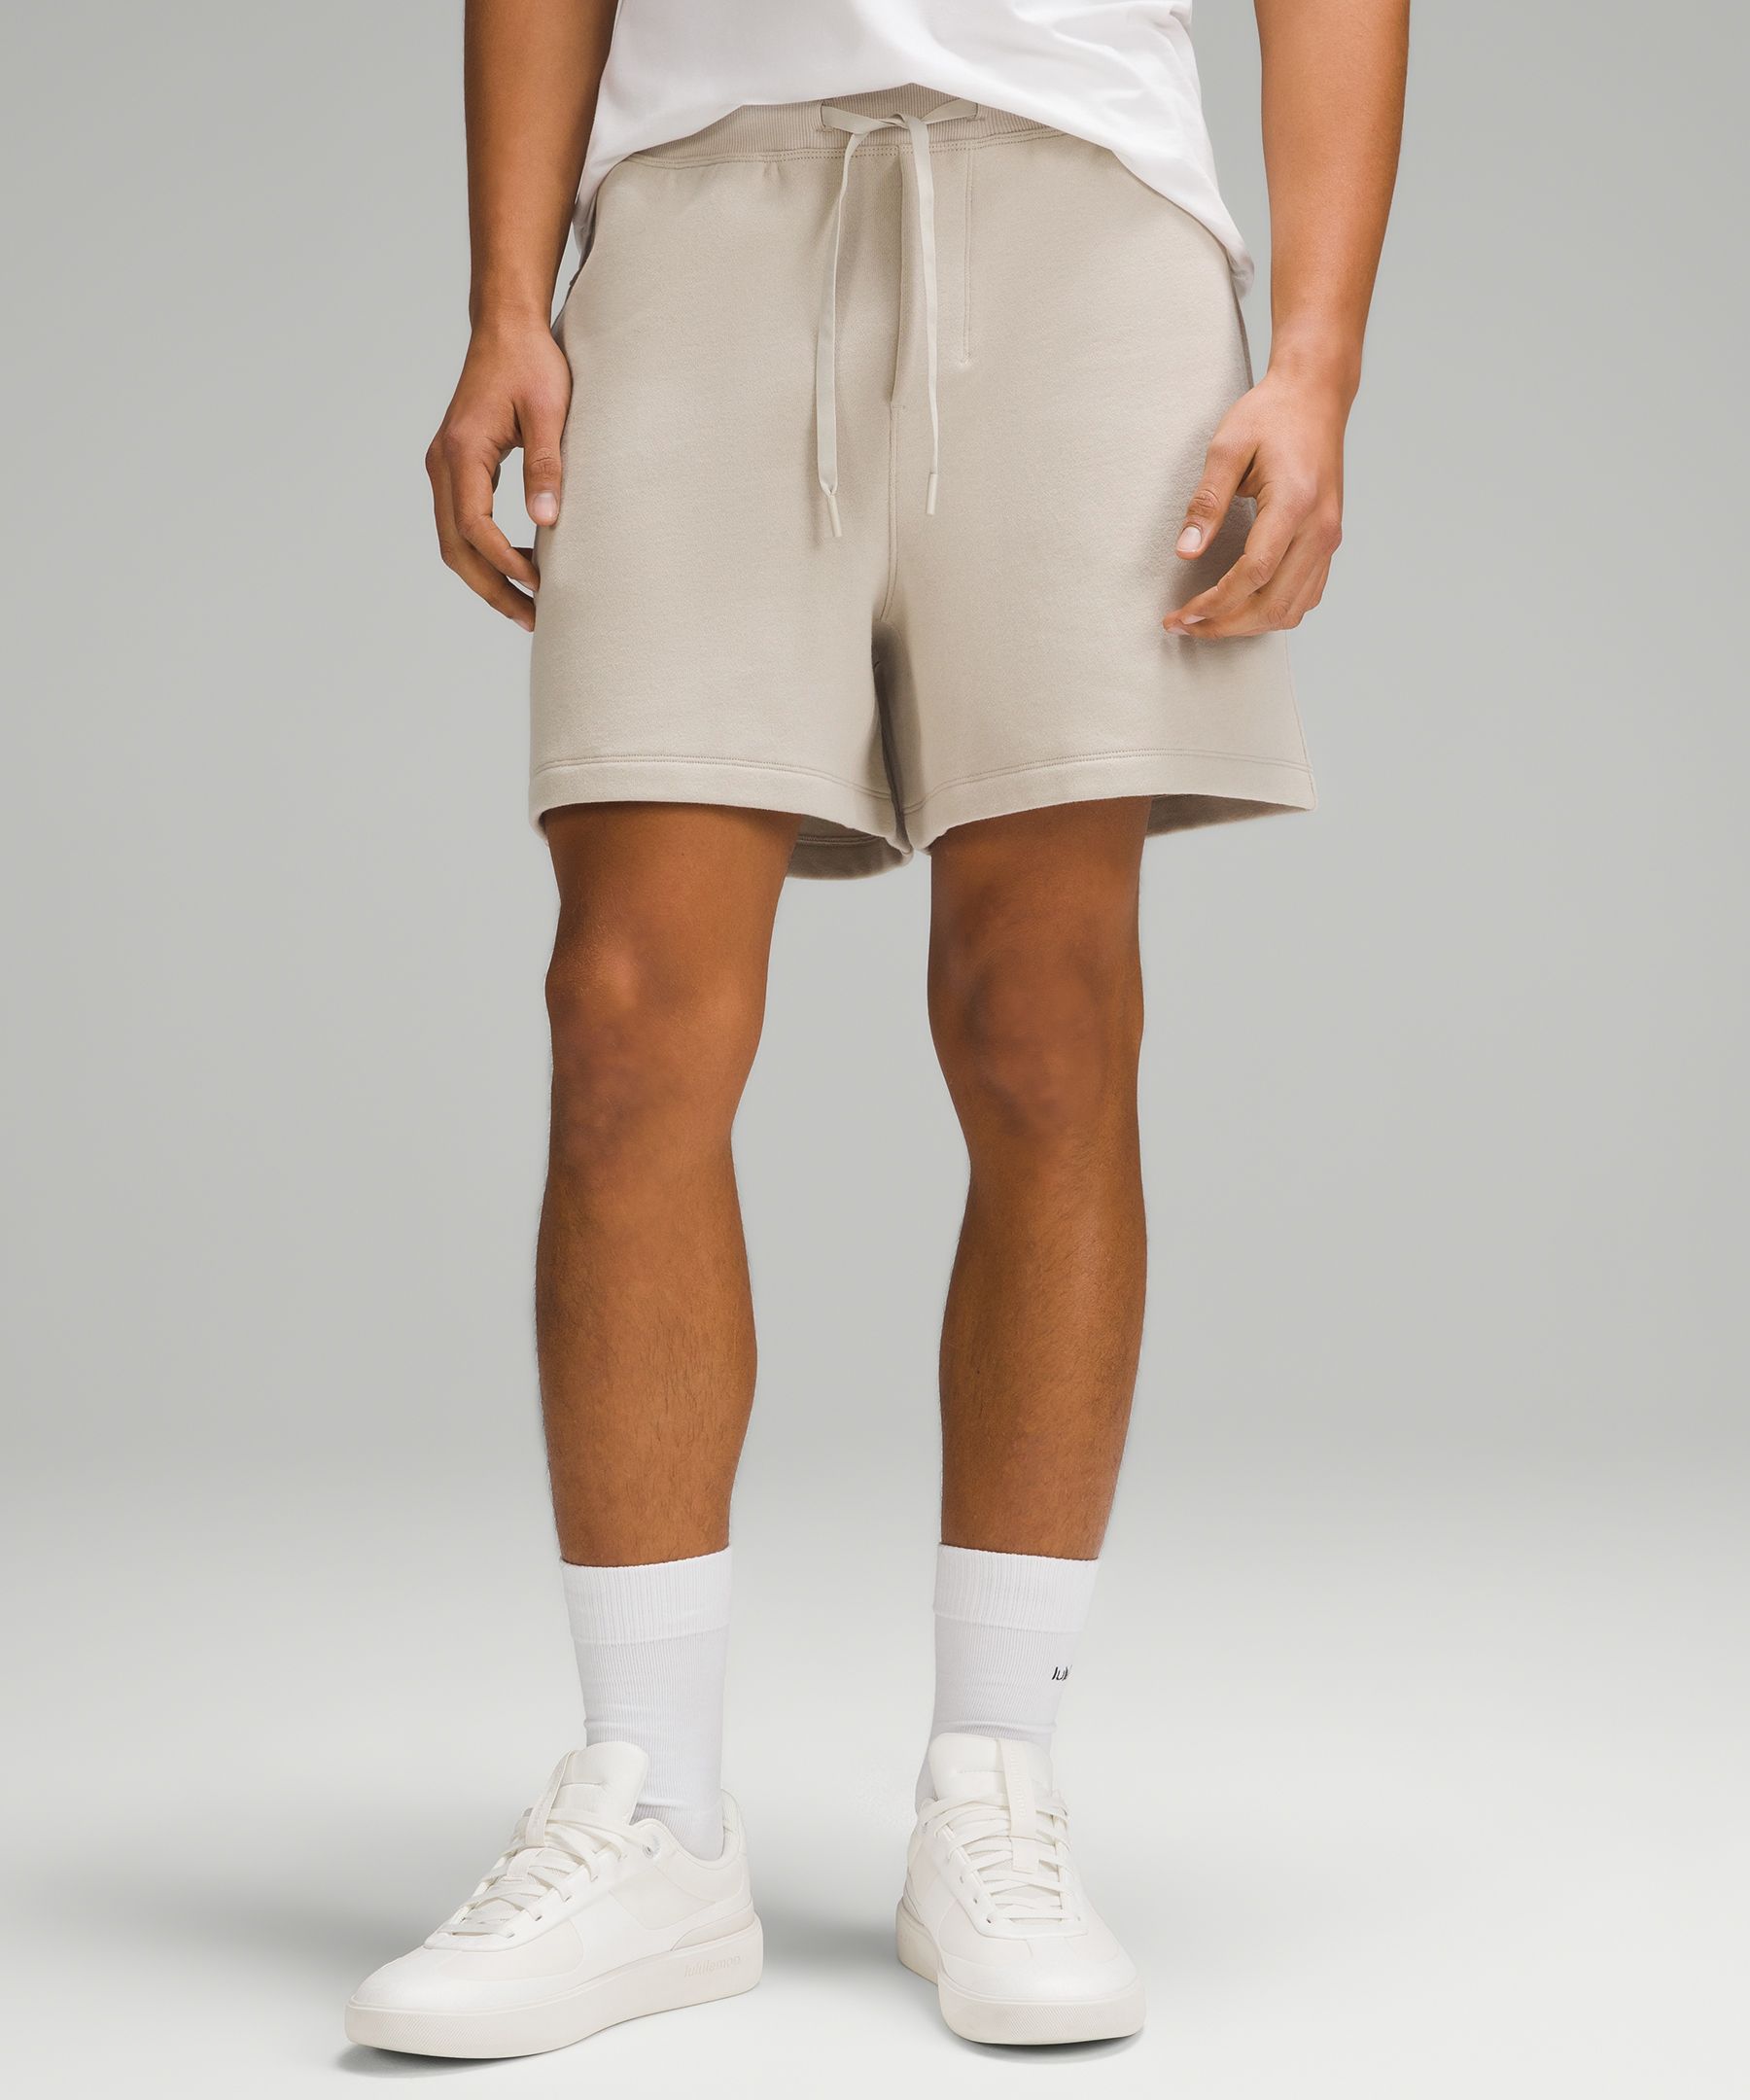 Men's 5 Inch Inseam Shorts